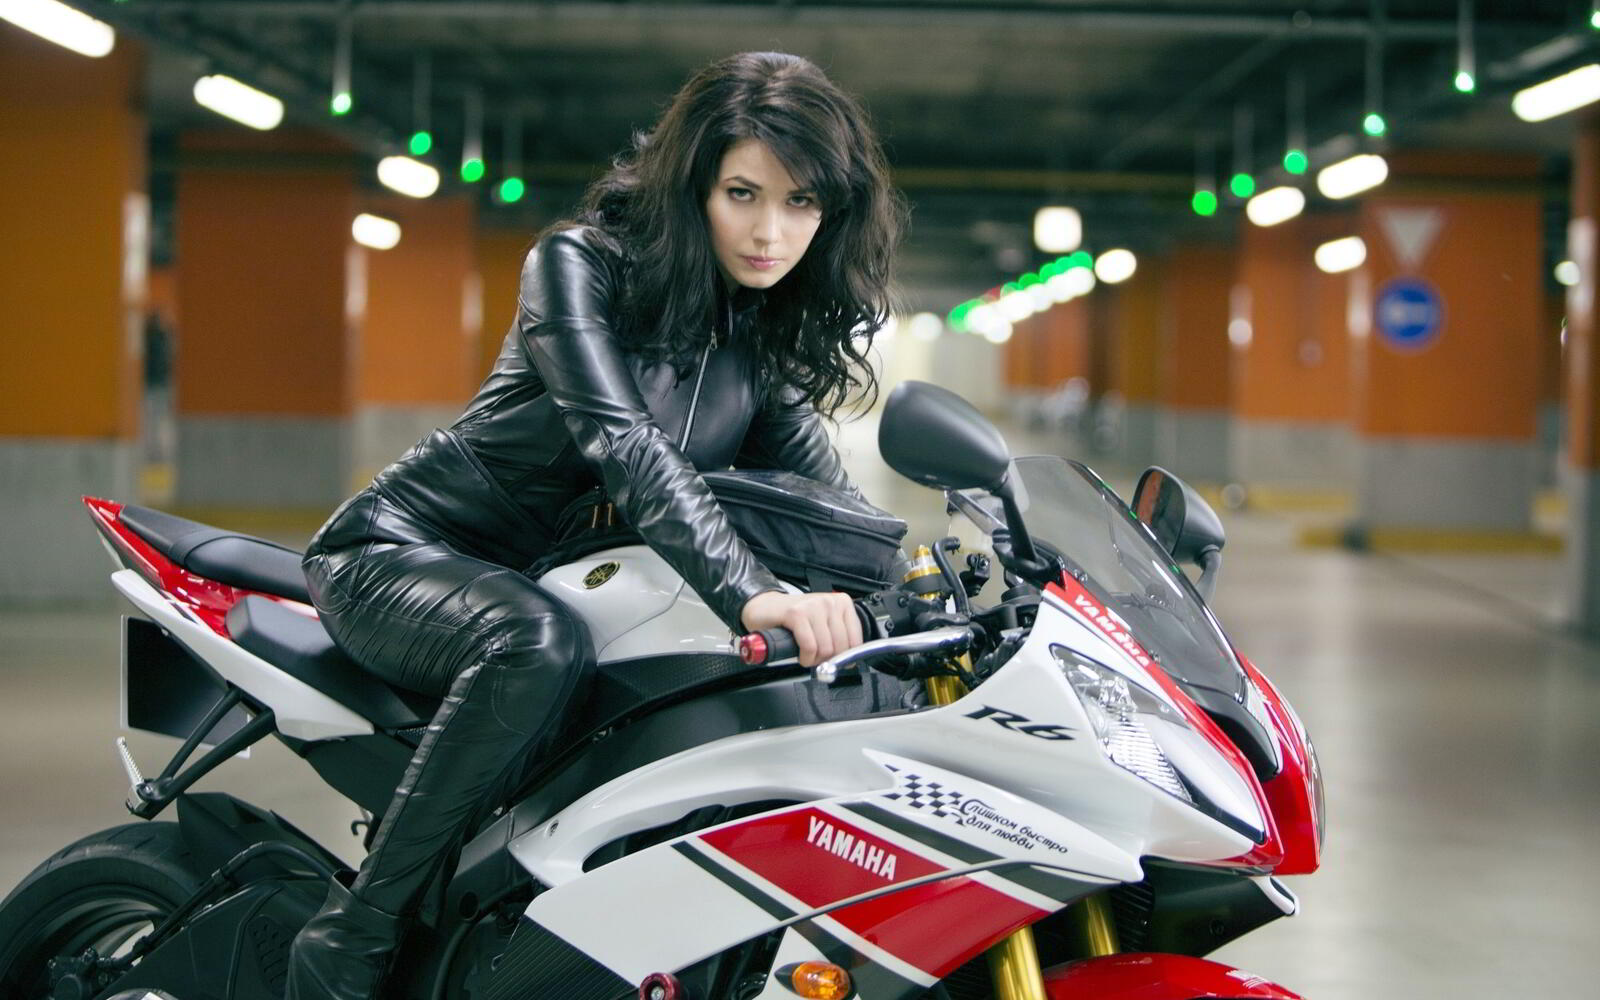 免费照片骑雅马哈运动摩托车的黑发女郎